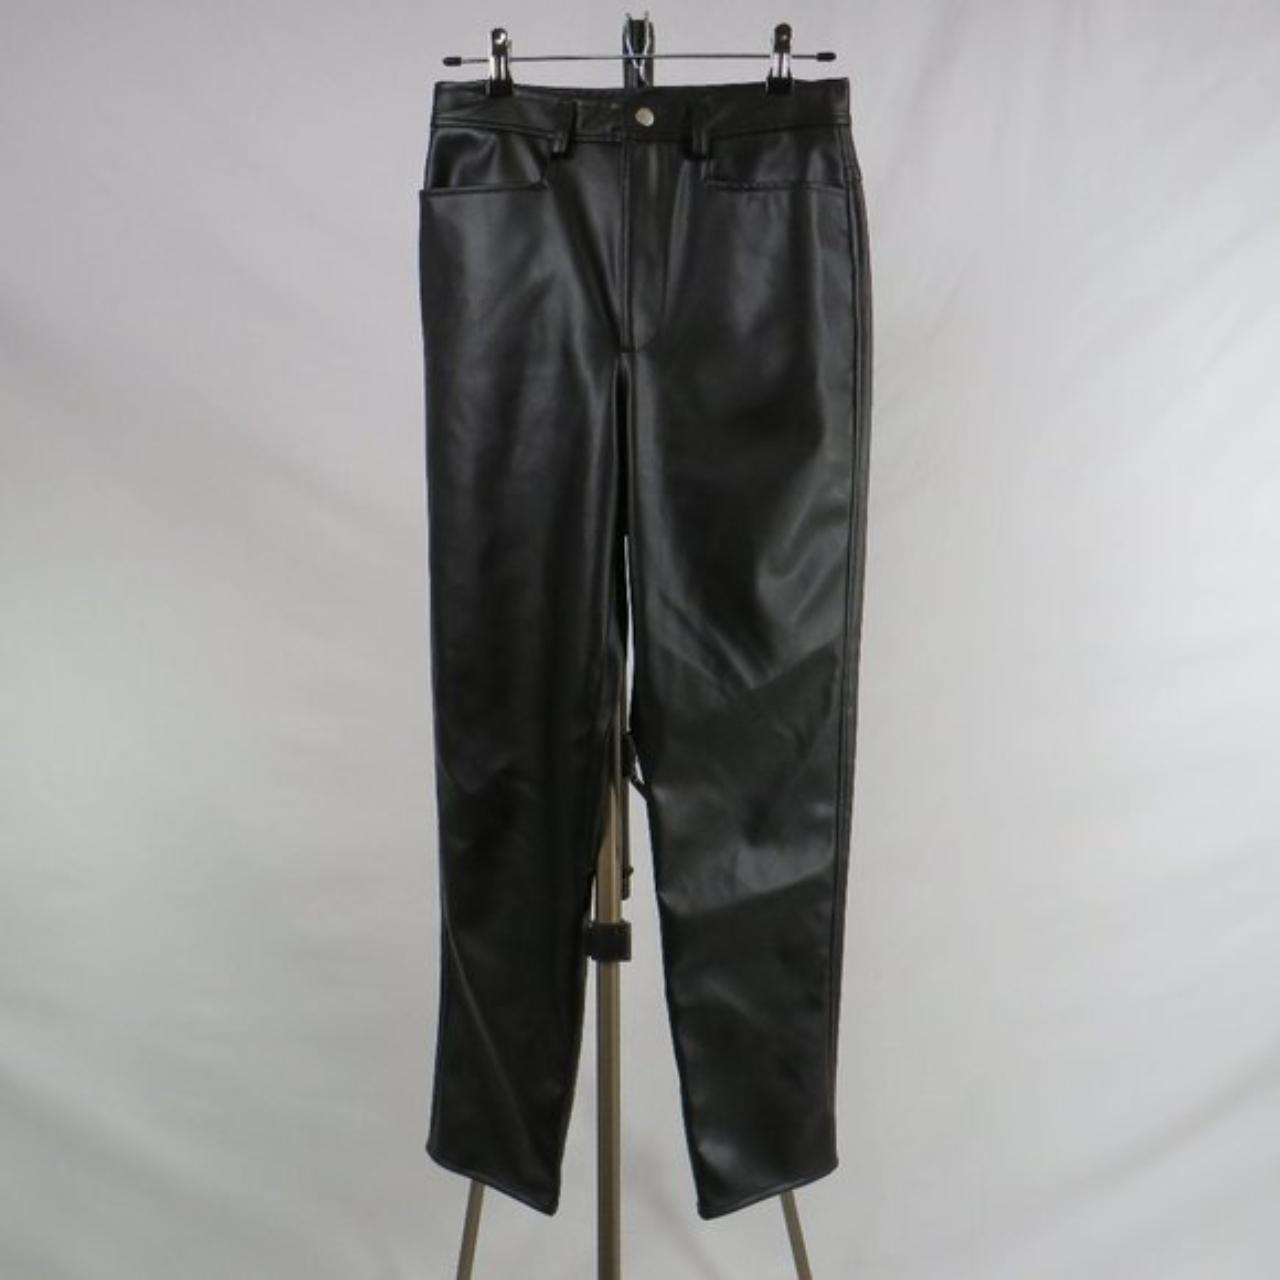 Liz Claiborne black faux leather high-rise pants... - Depop